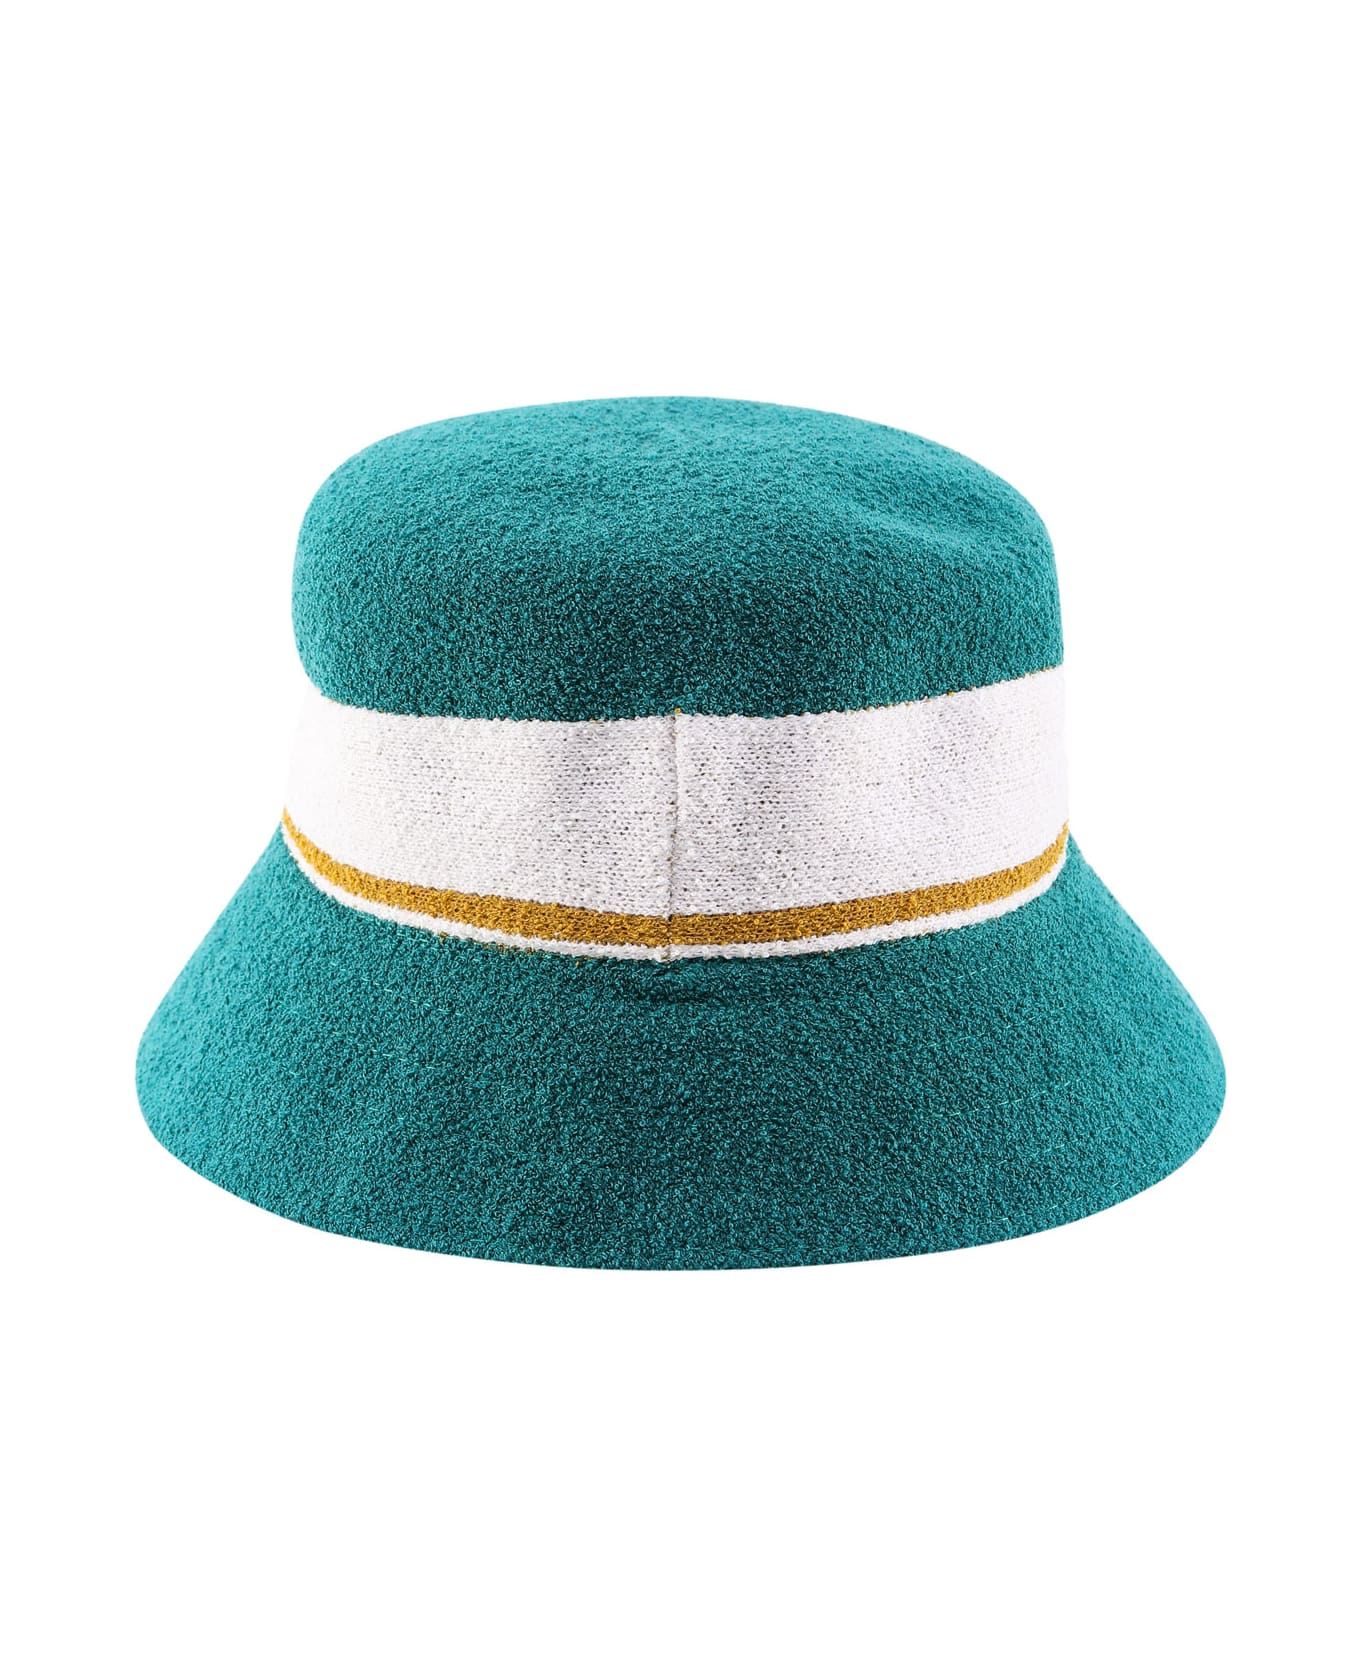 Kangol Hat - Green 帽子